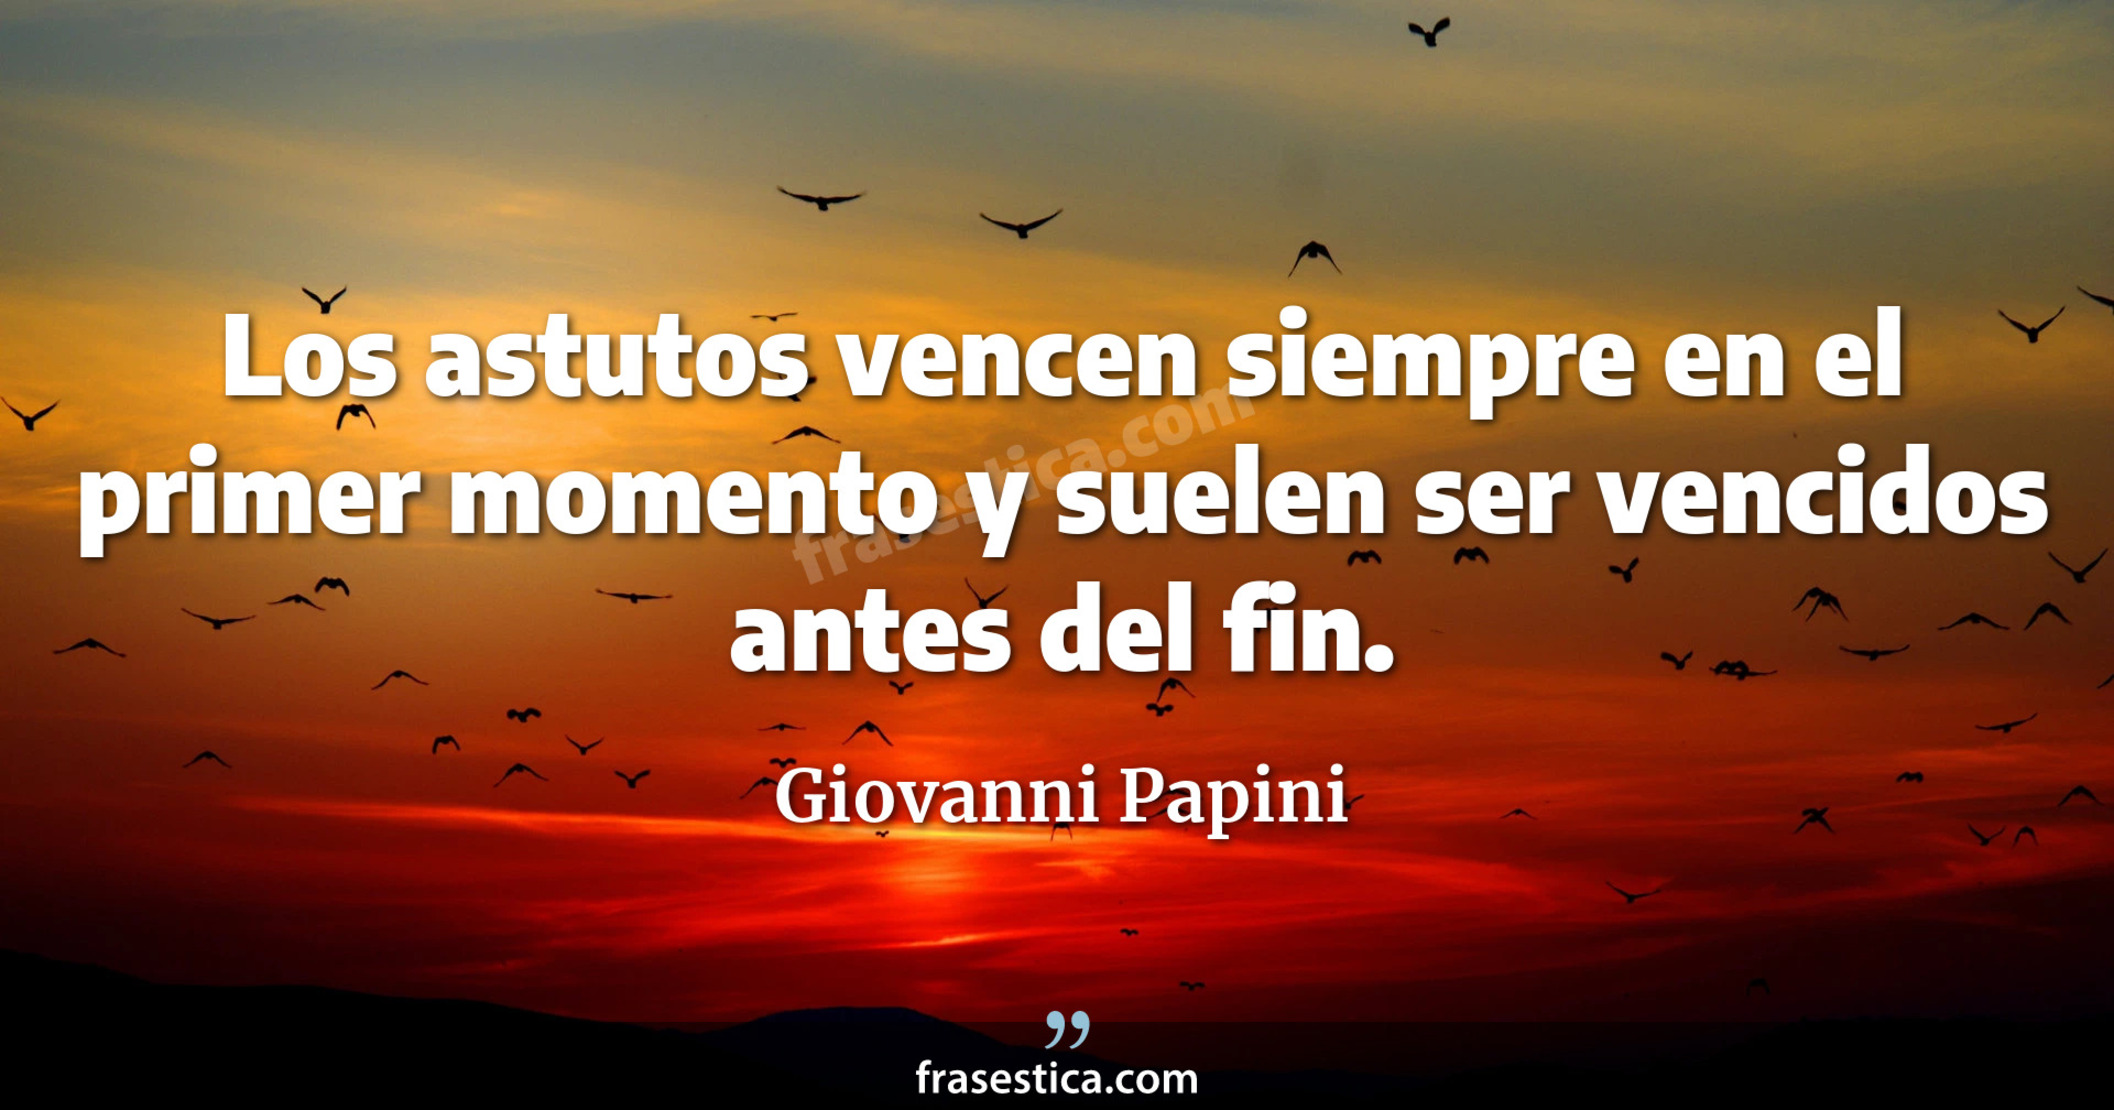 Los astutos vencen siempre en el primer momento y suelen ser vencidos antes del fin. - Giovanni Papini